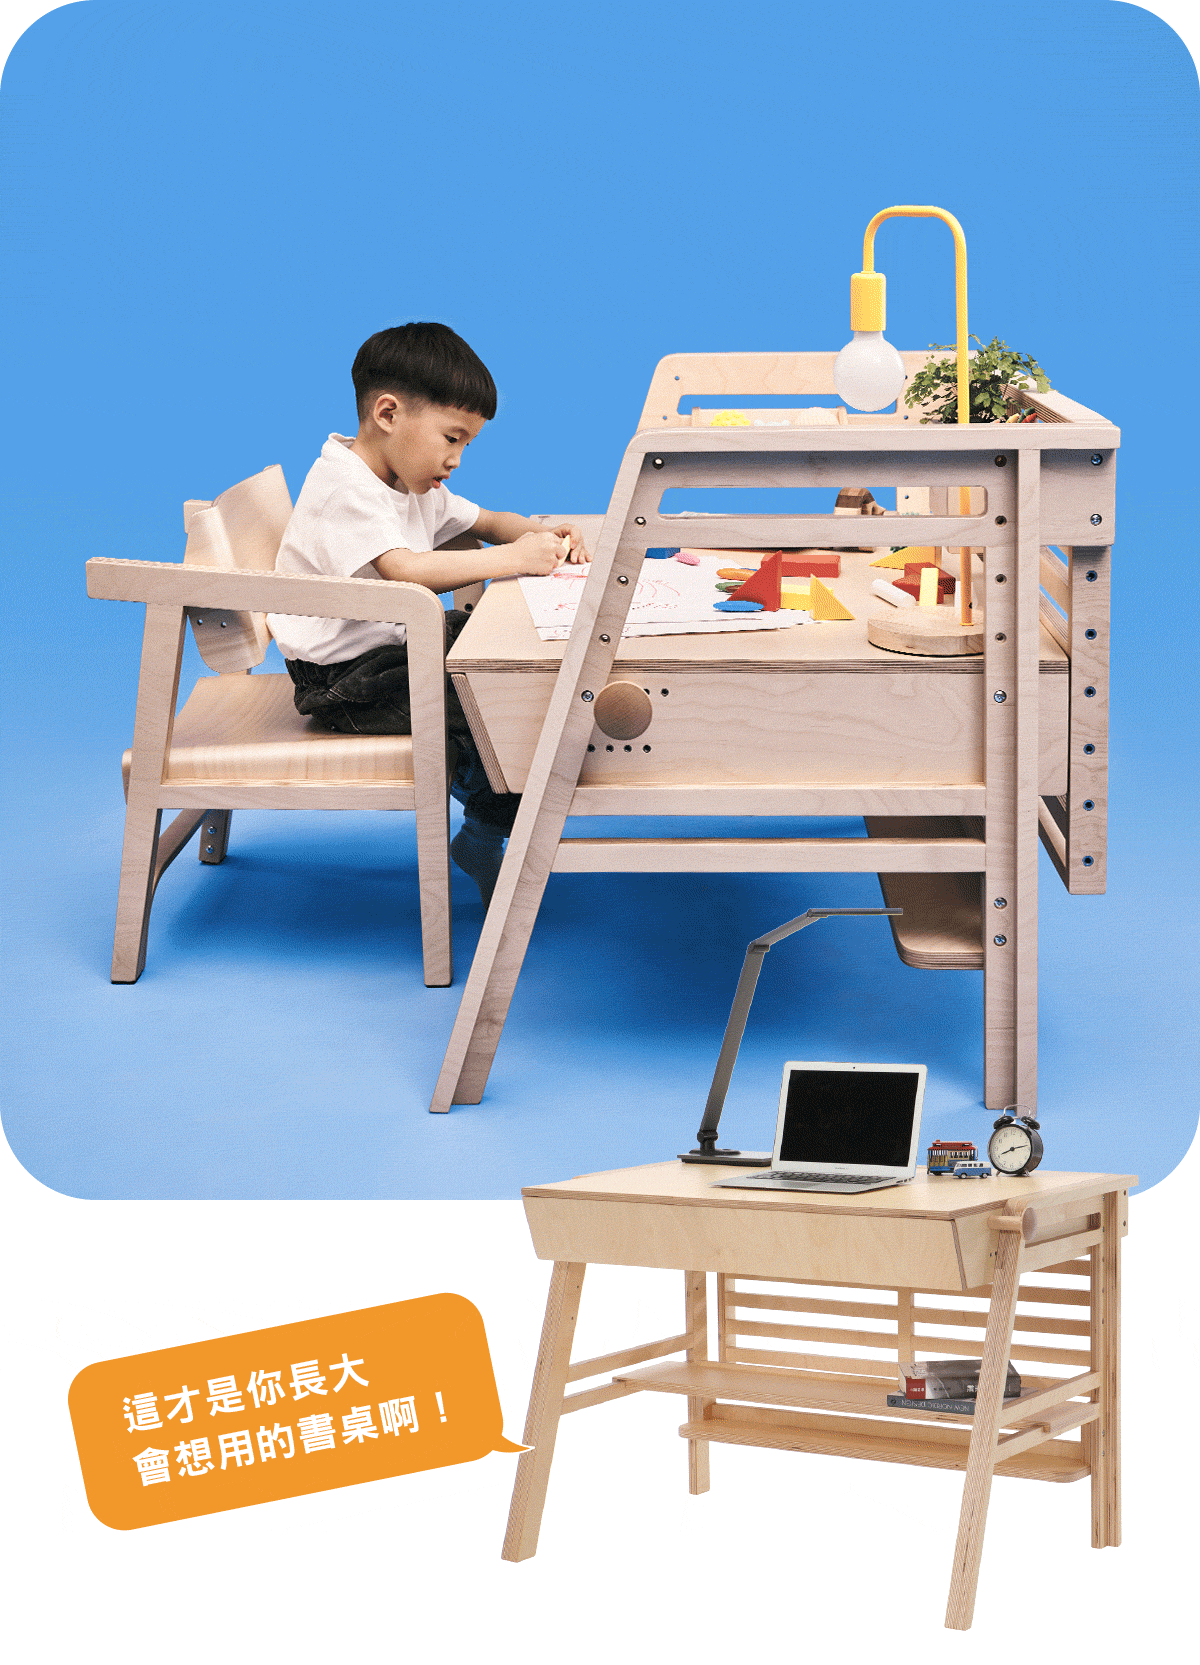 柯比桌 - 專為學齡前兒童設計的成長型書桌GIF